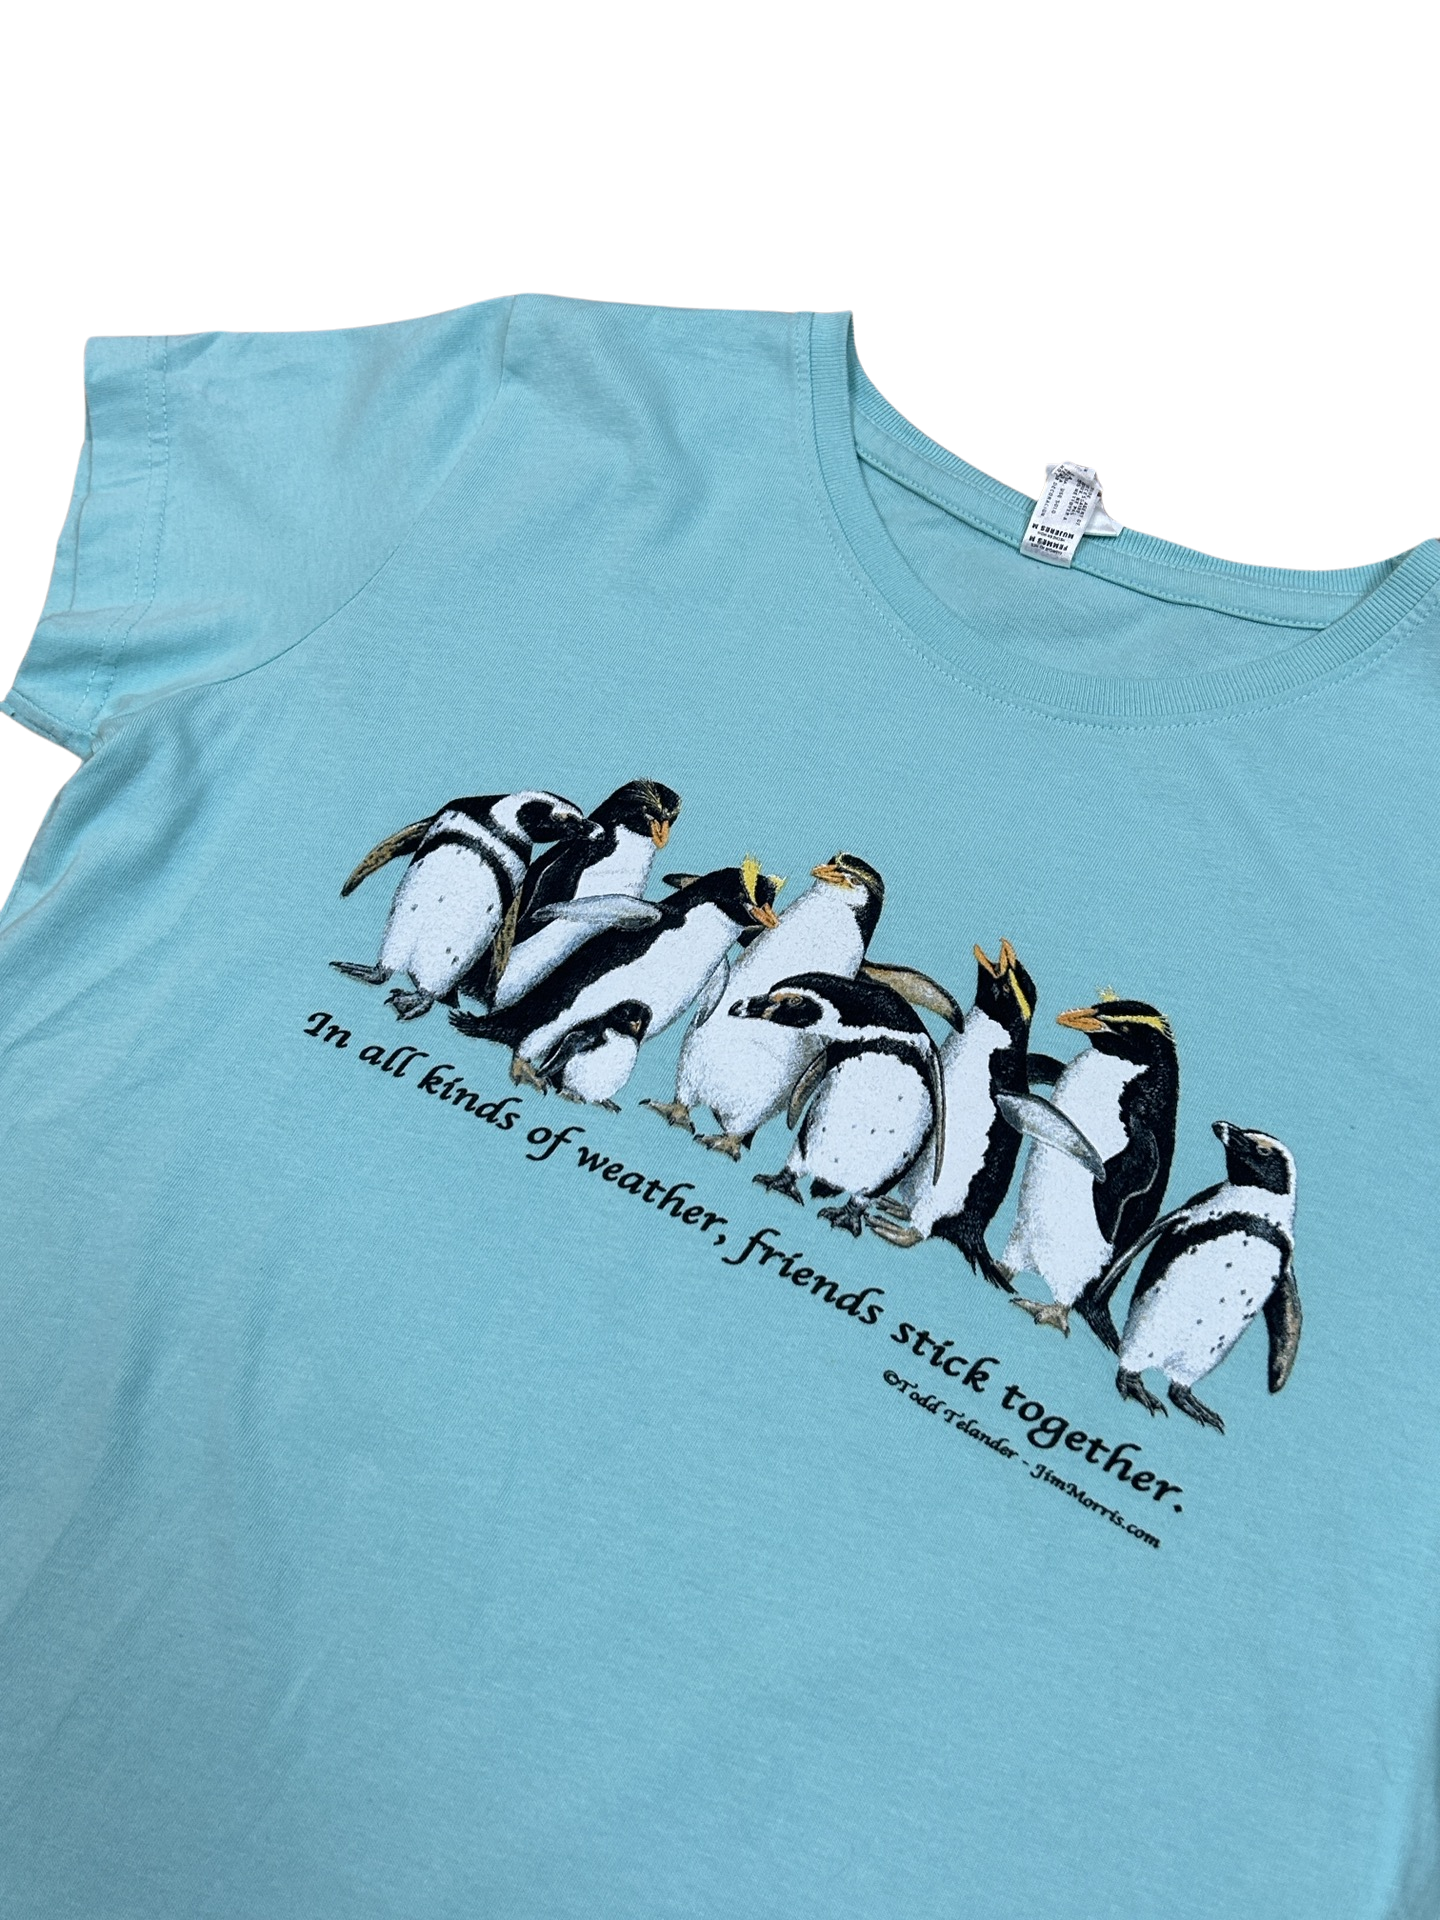 Penguin Friends tee